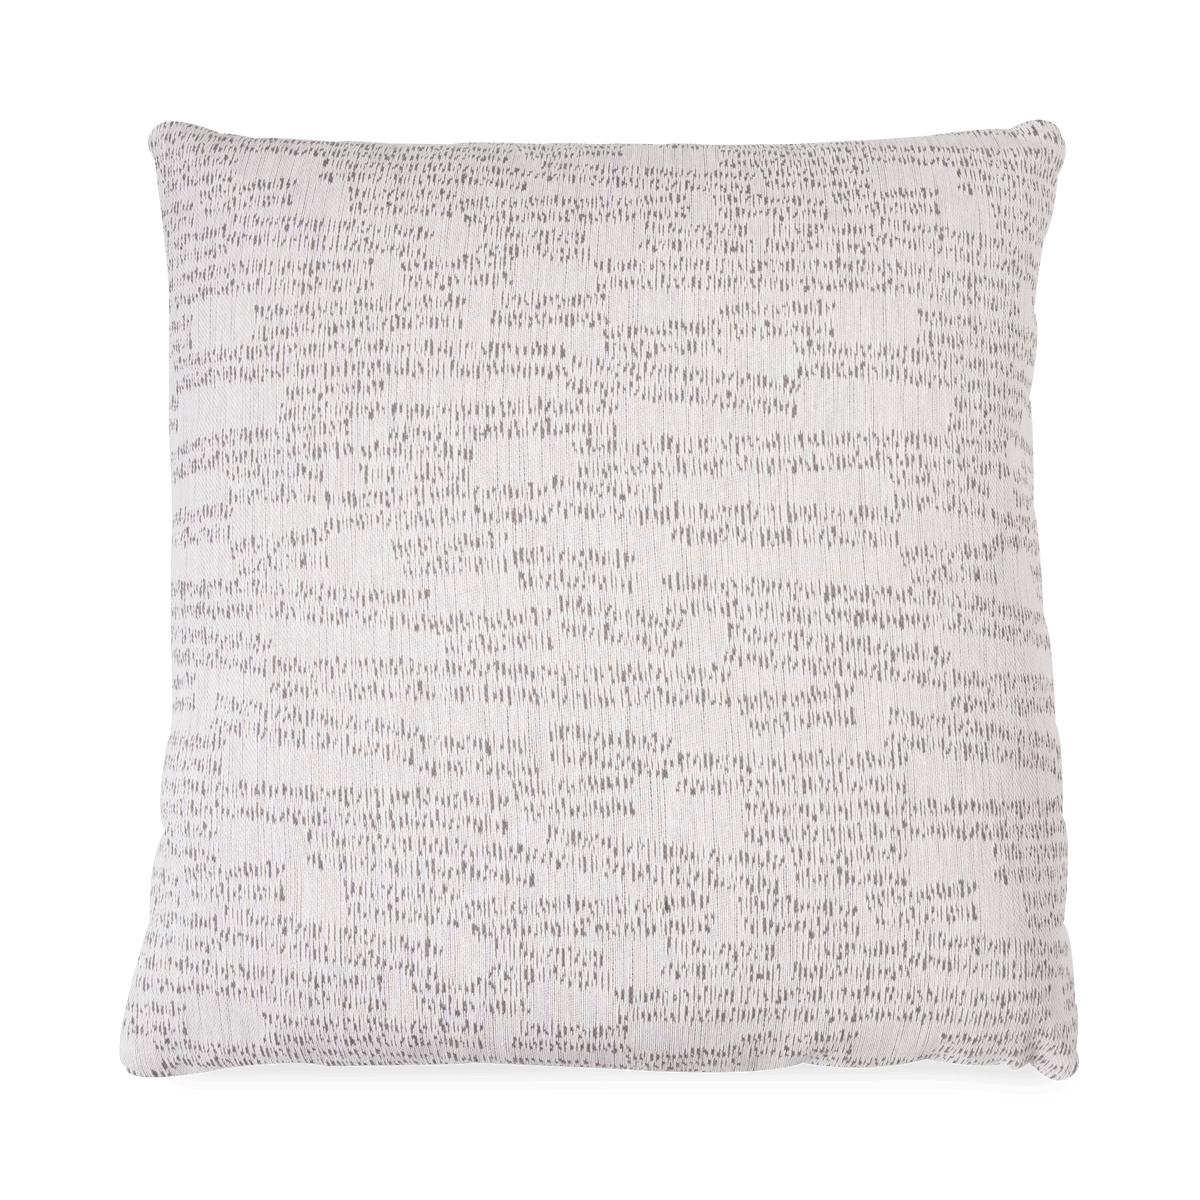 Morse Pillow